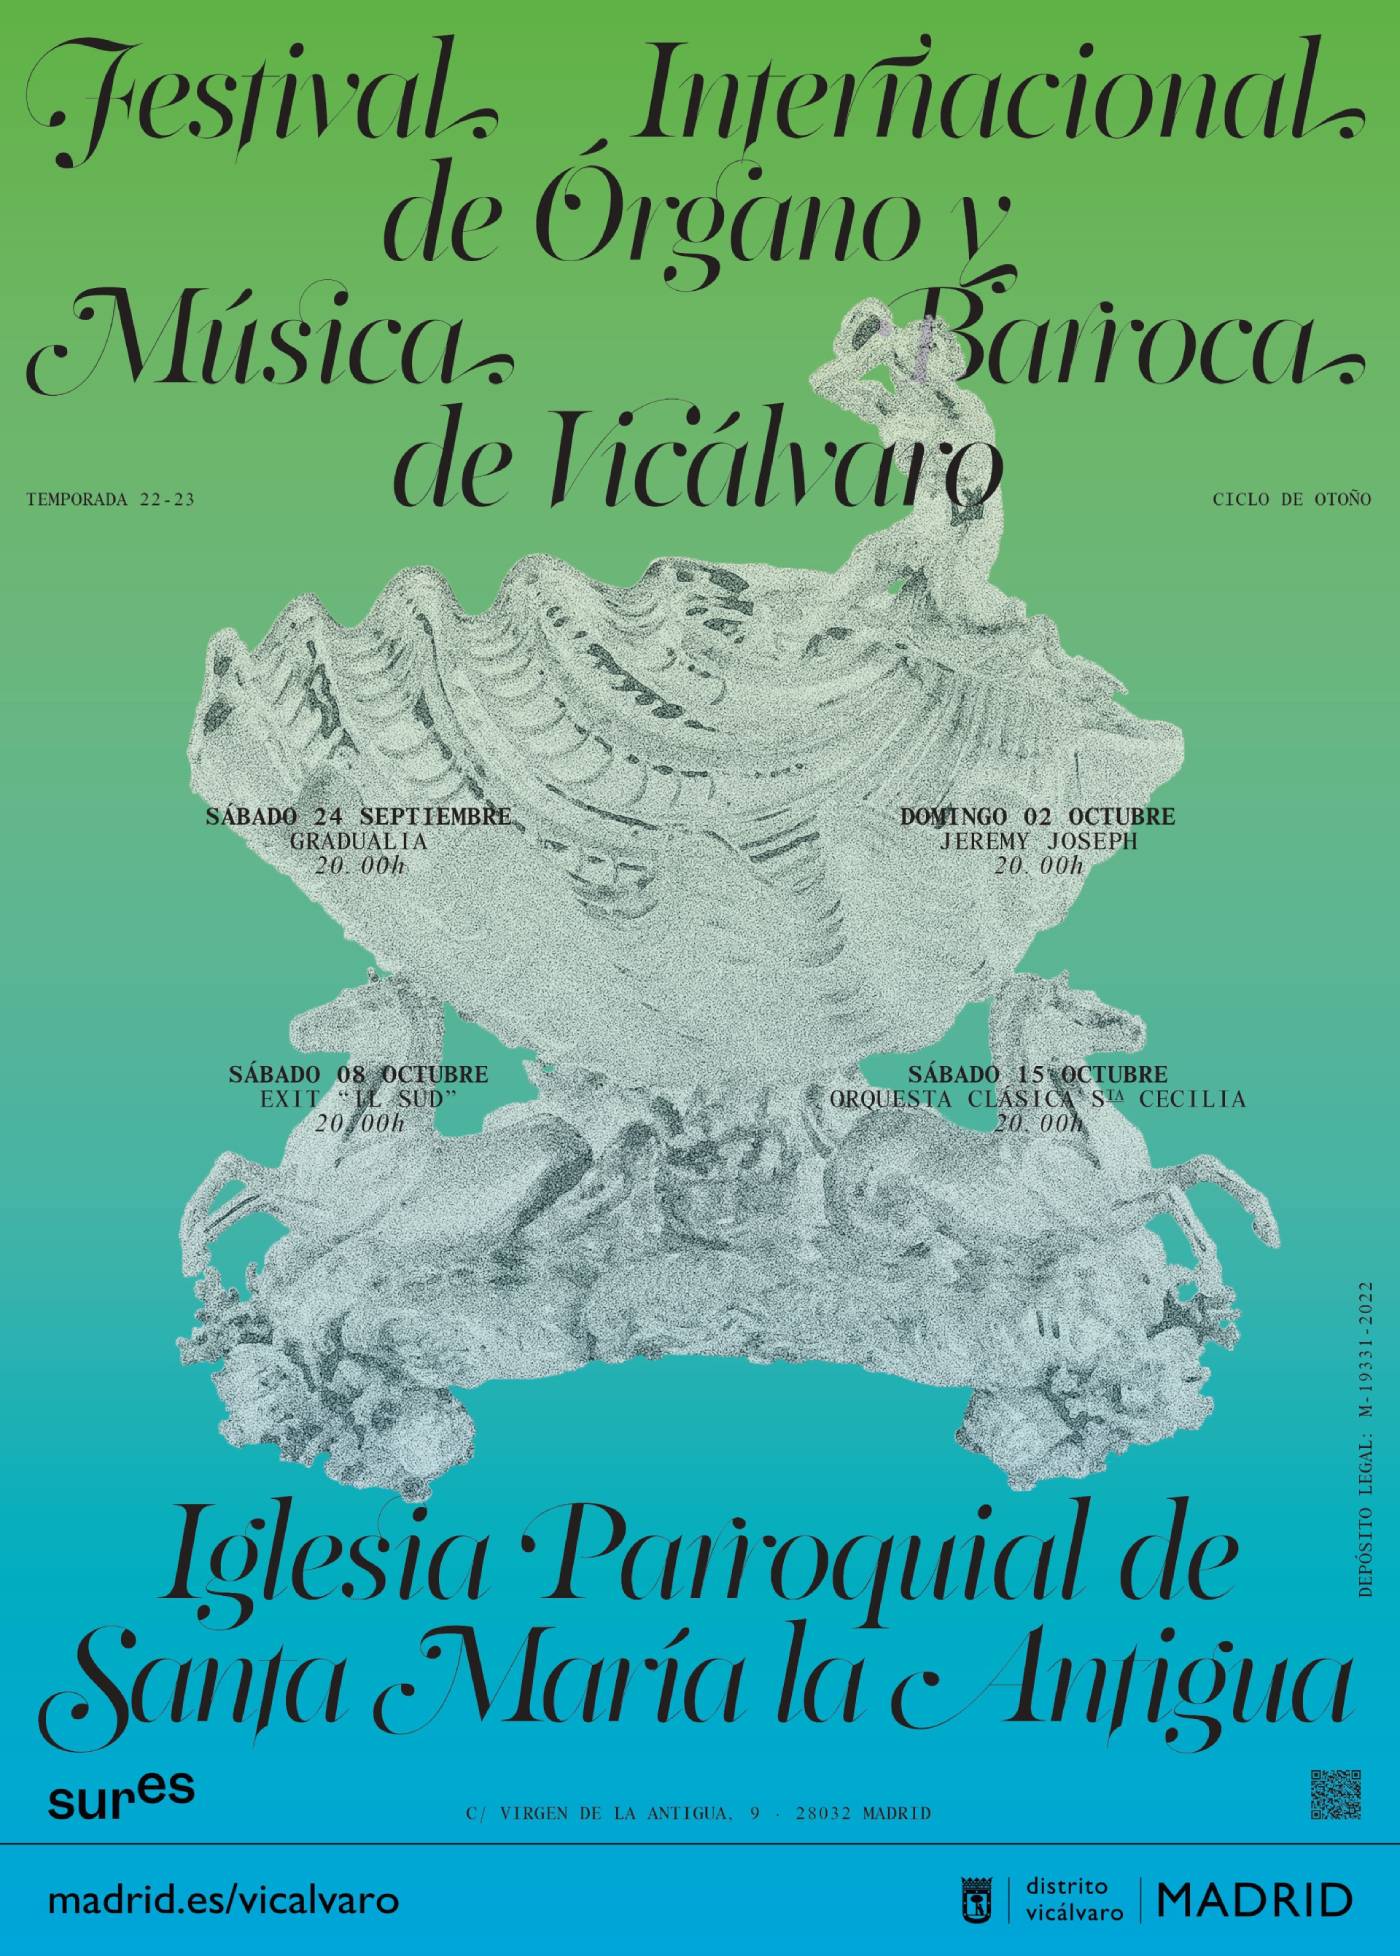 Cartel Ciclo de Otoño Festival Internacional de Órgano y Müsica Barroca de Vicálvaro